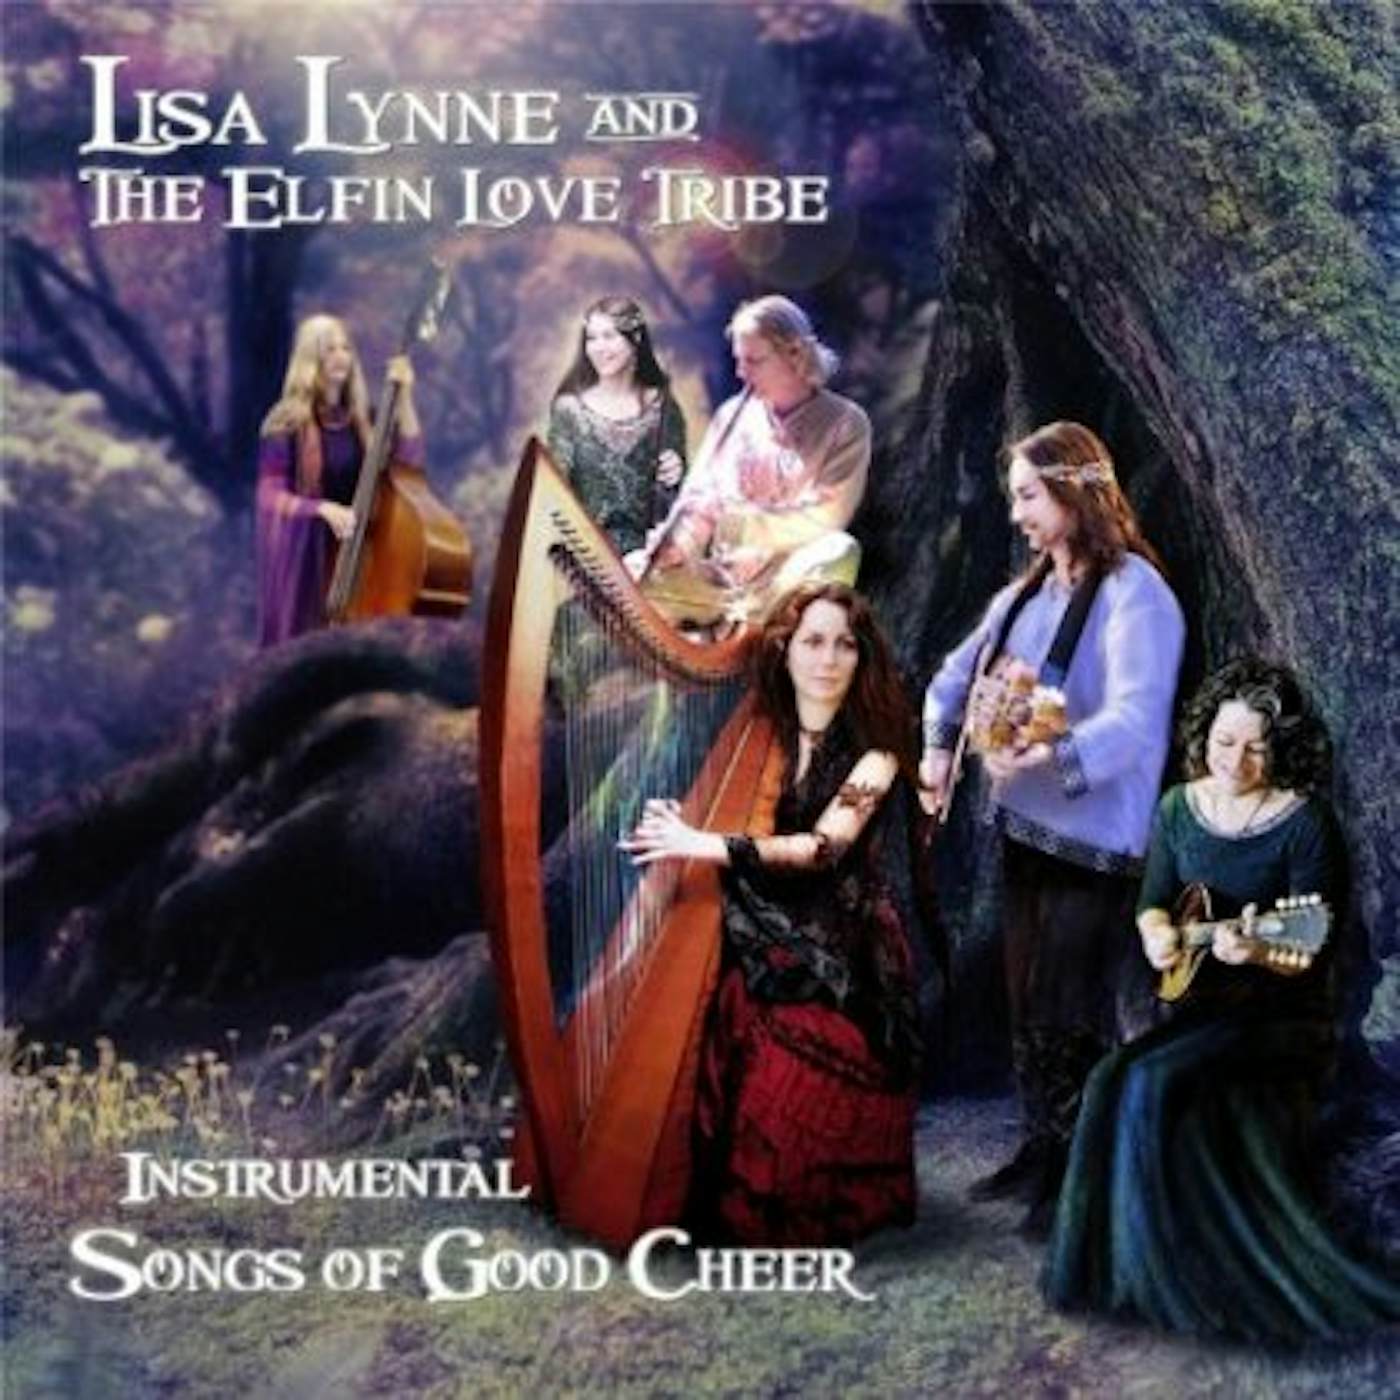 Lisa Lynne INSTRUMENTAL SONGS OF GOOD CHEER CD